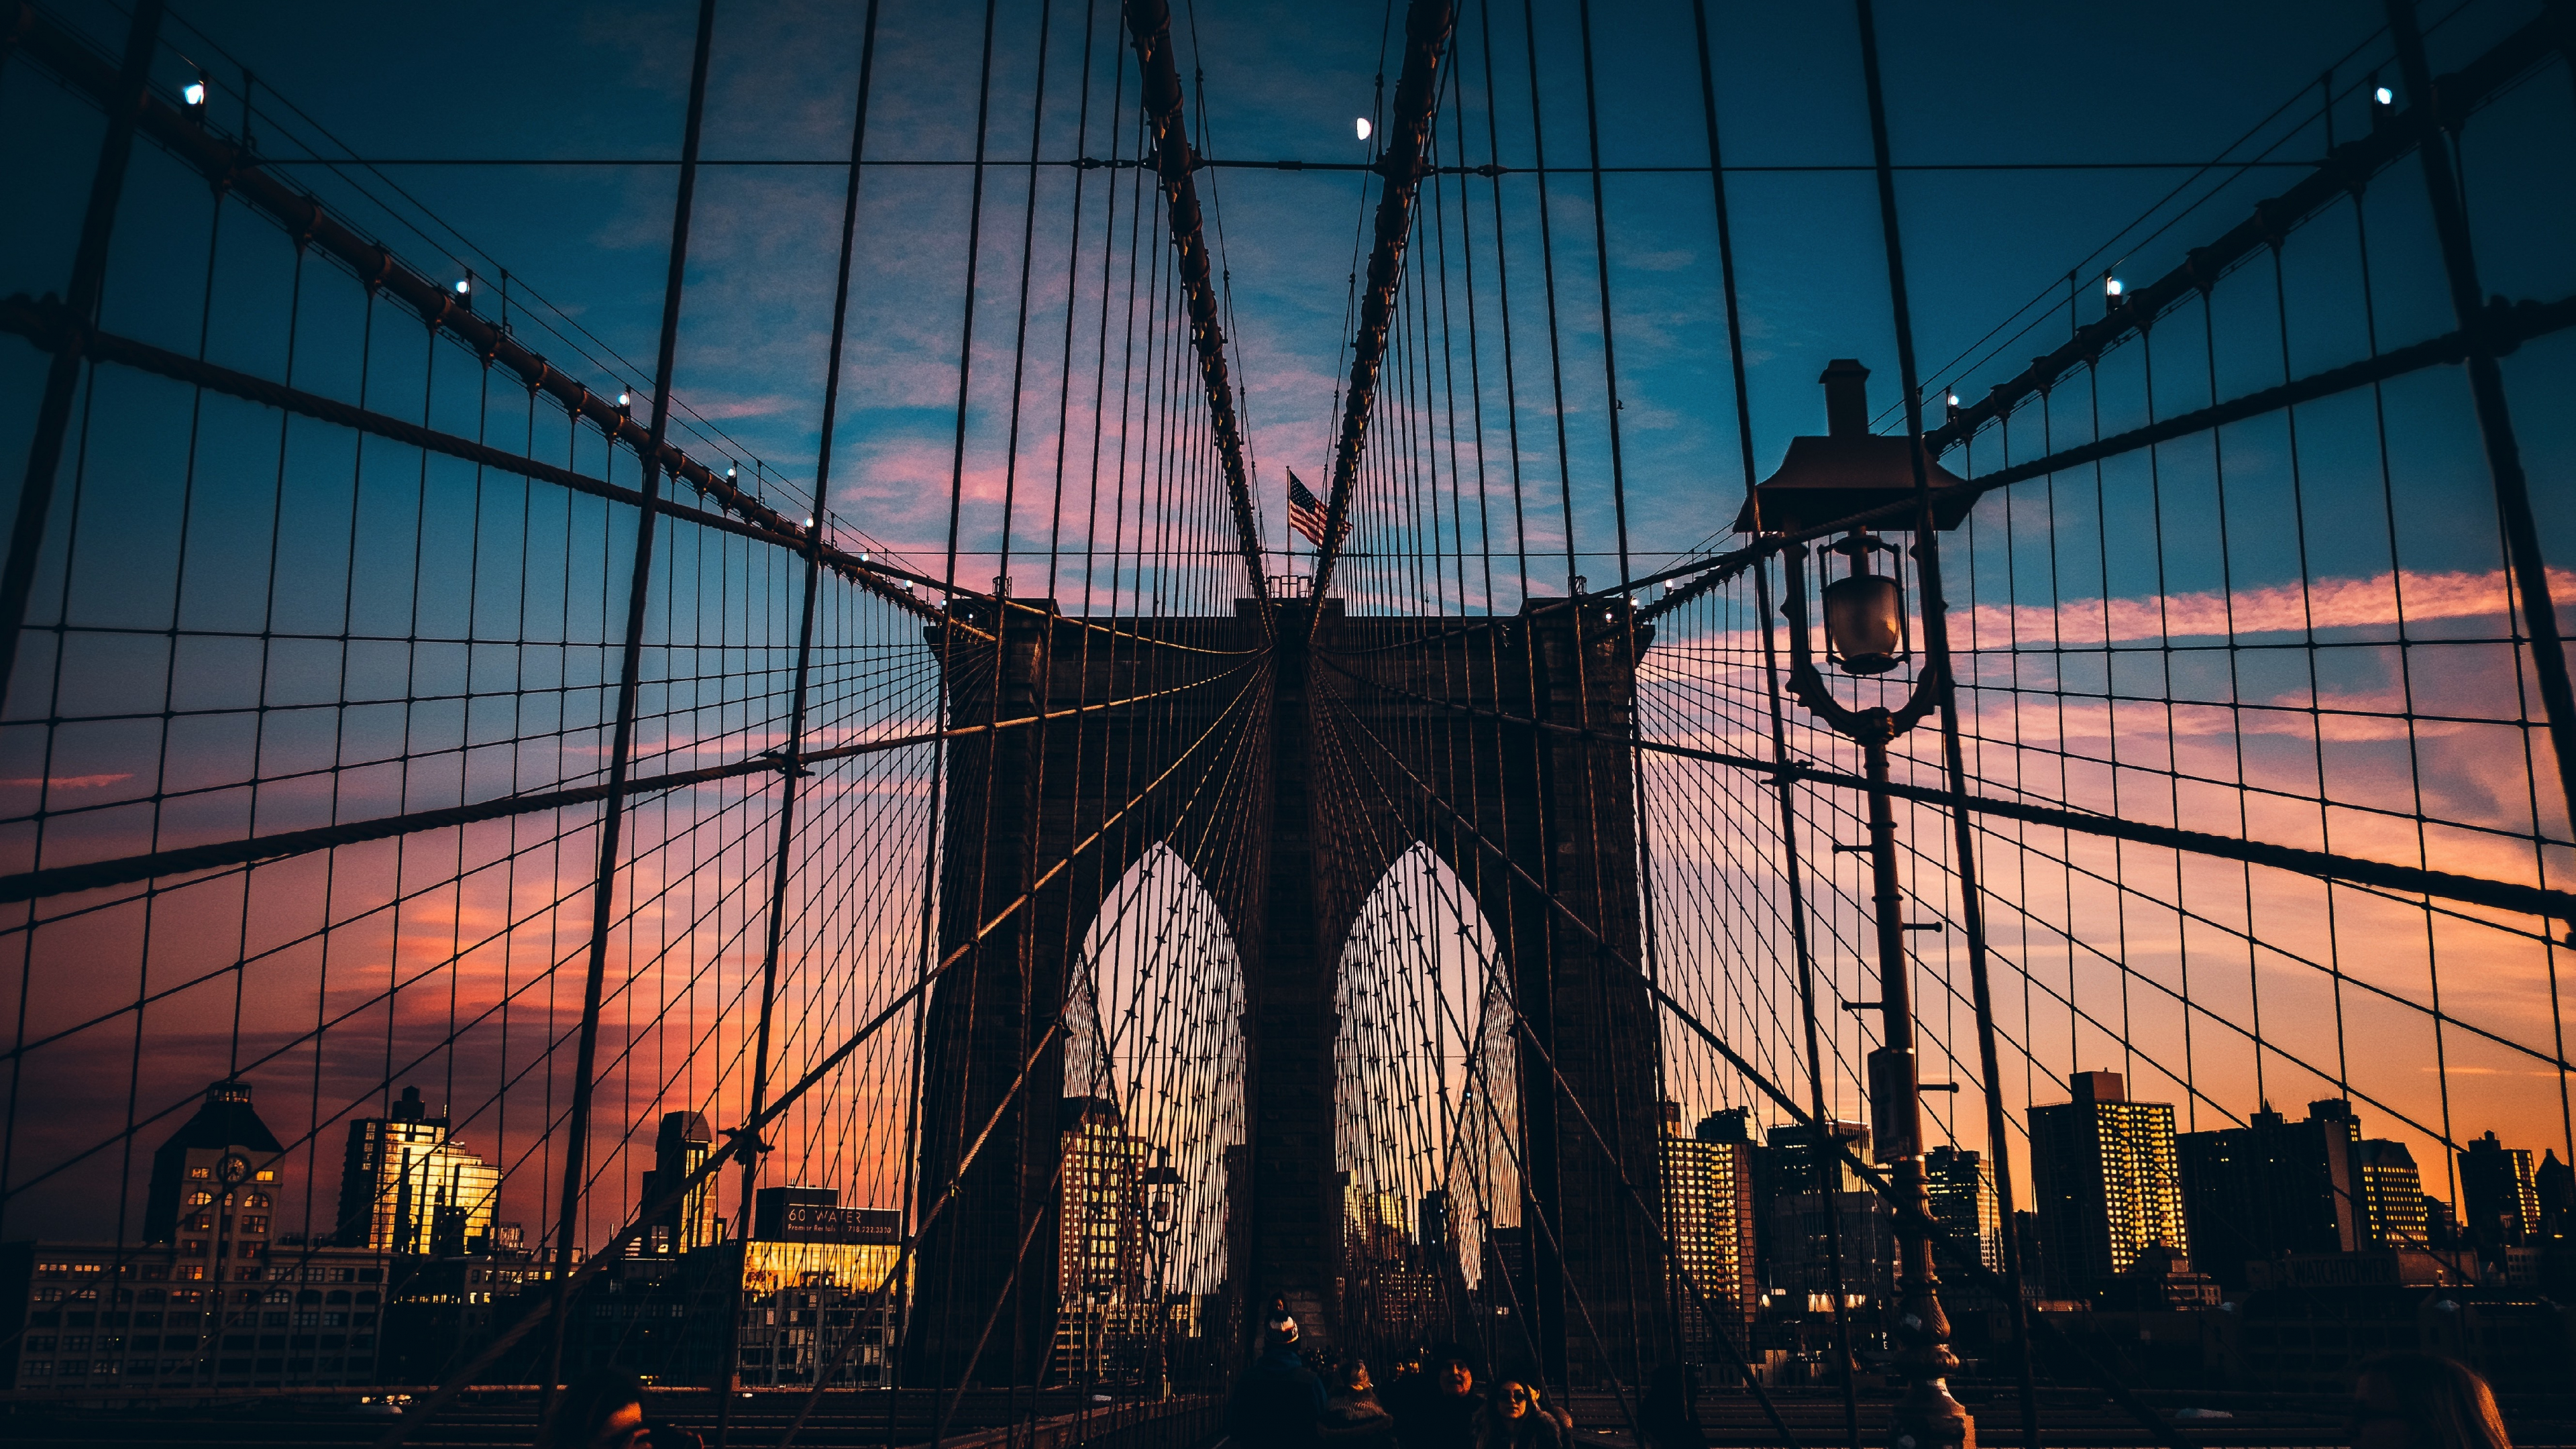 Download 3840x2160 Wallpaper Suspension Bridge Architecture Brooklyn